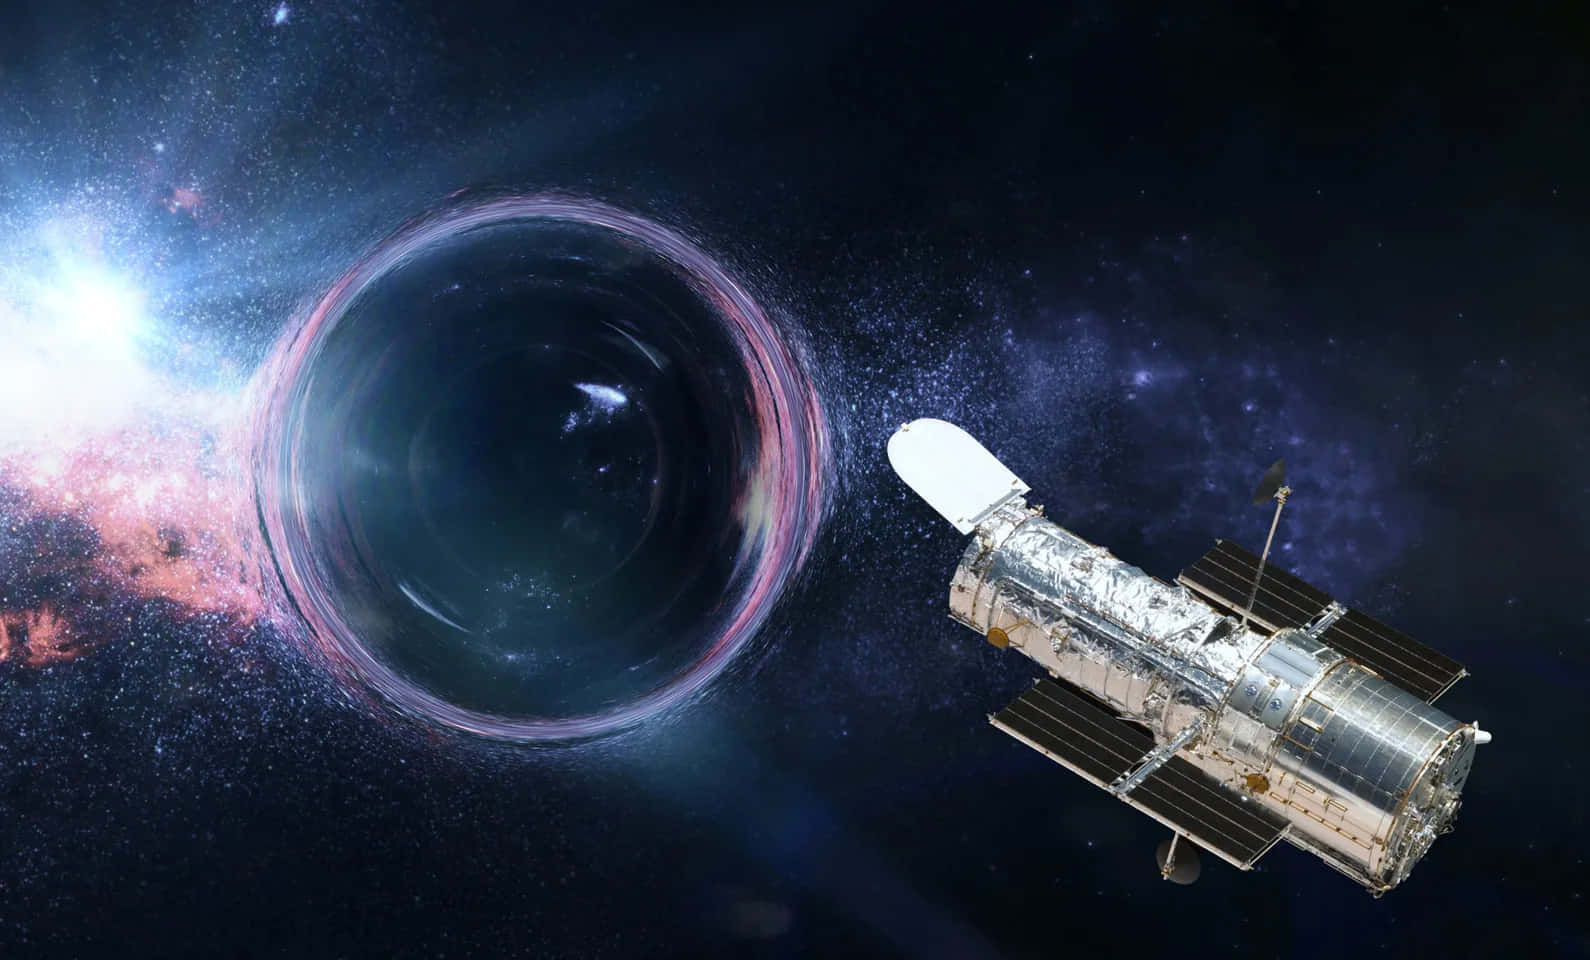 Observandoun Agujero Negro Raro Y Distante Con El Telescopio Hubble